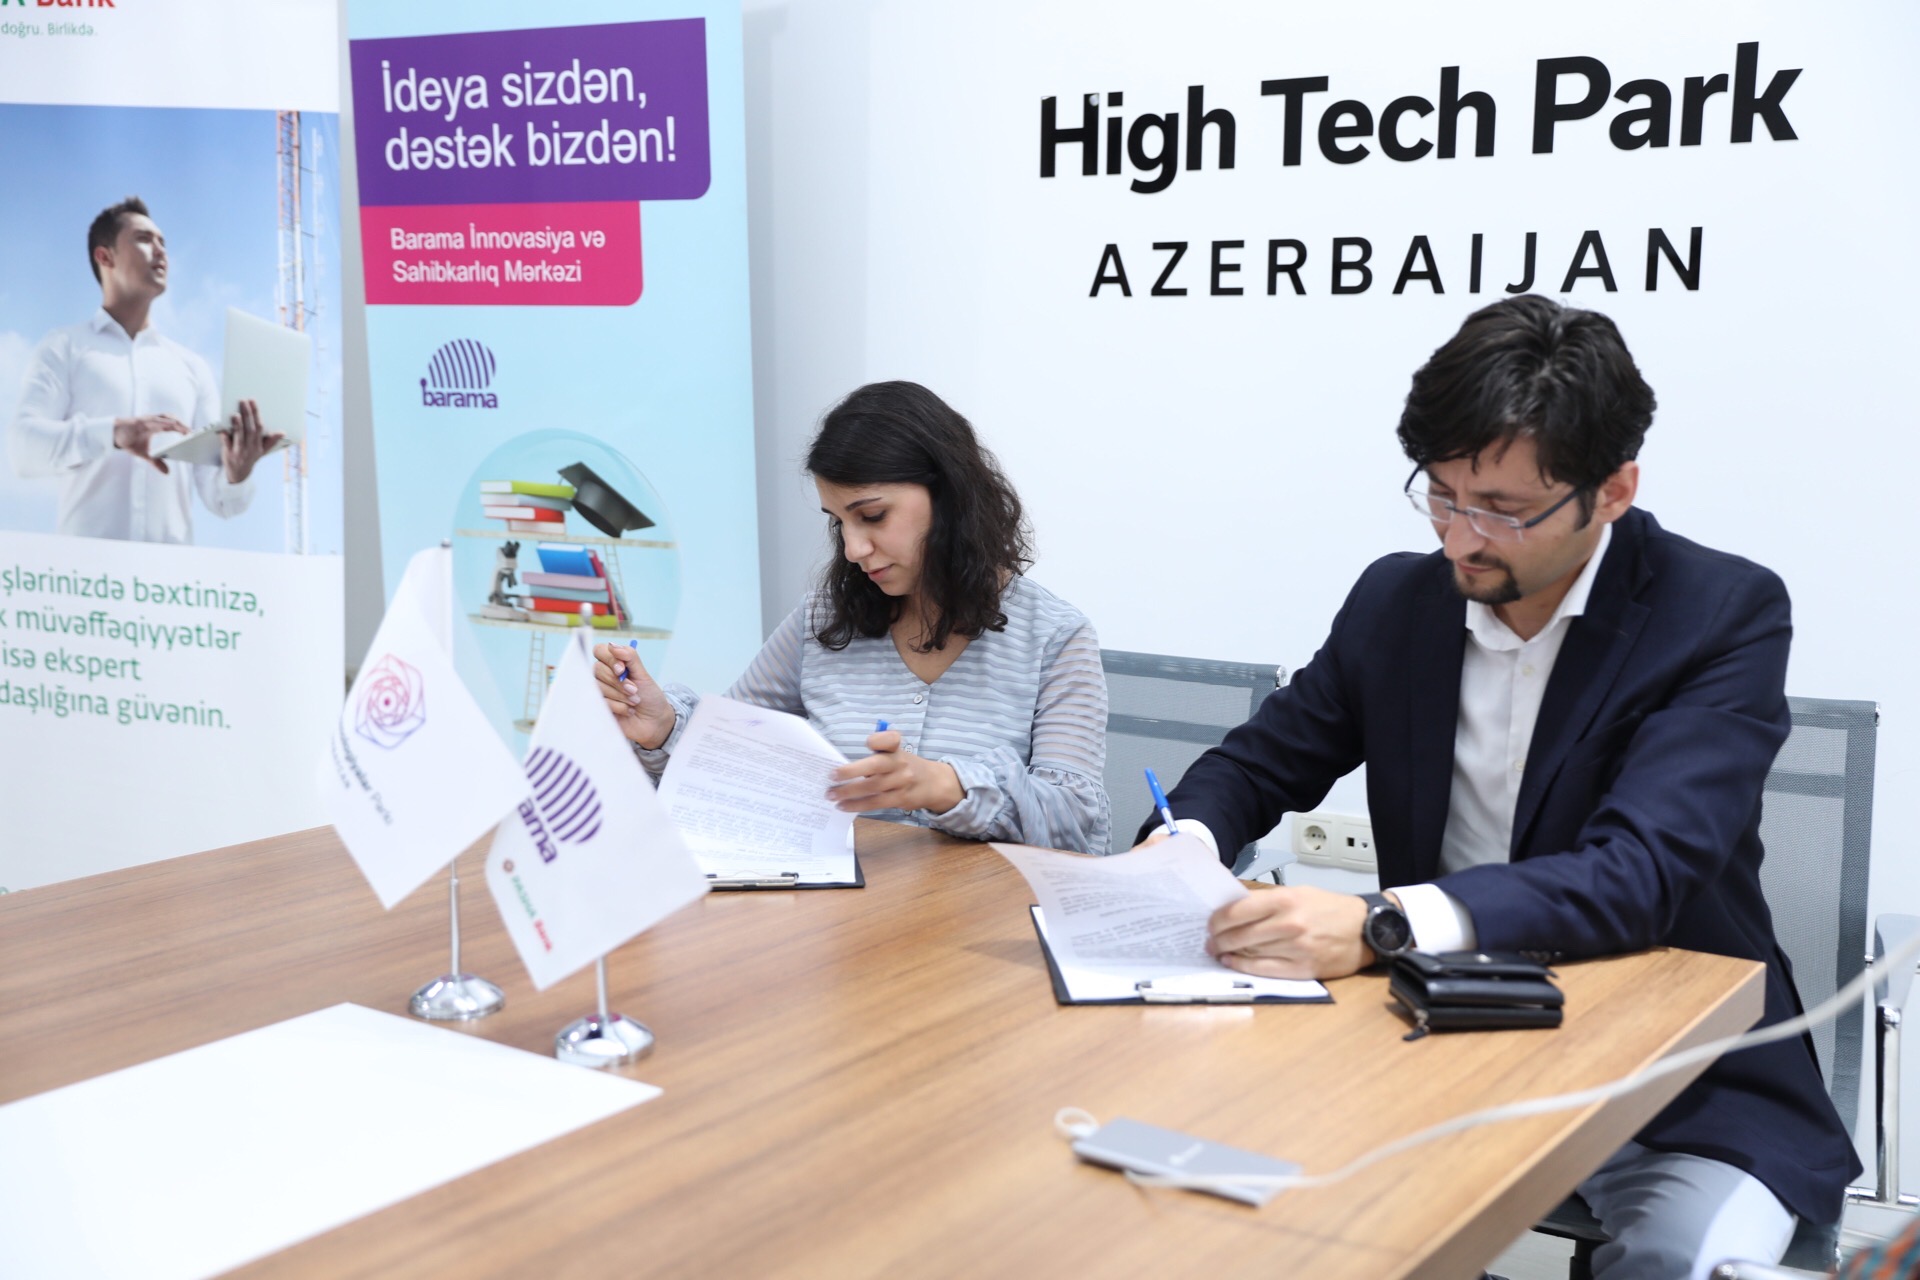 Центр «Barama» Azercell и Парк Высоких Технологий подписали меморандум о сотрудничестве